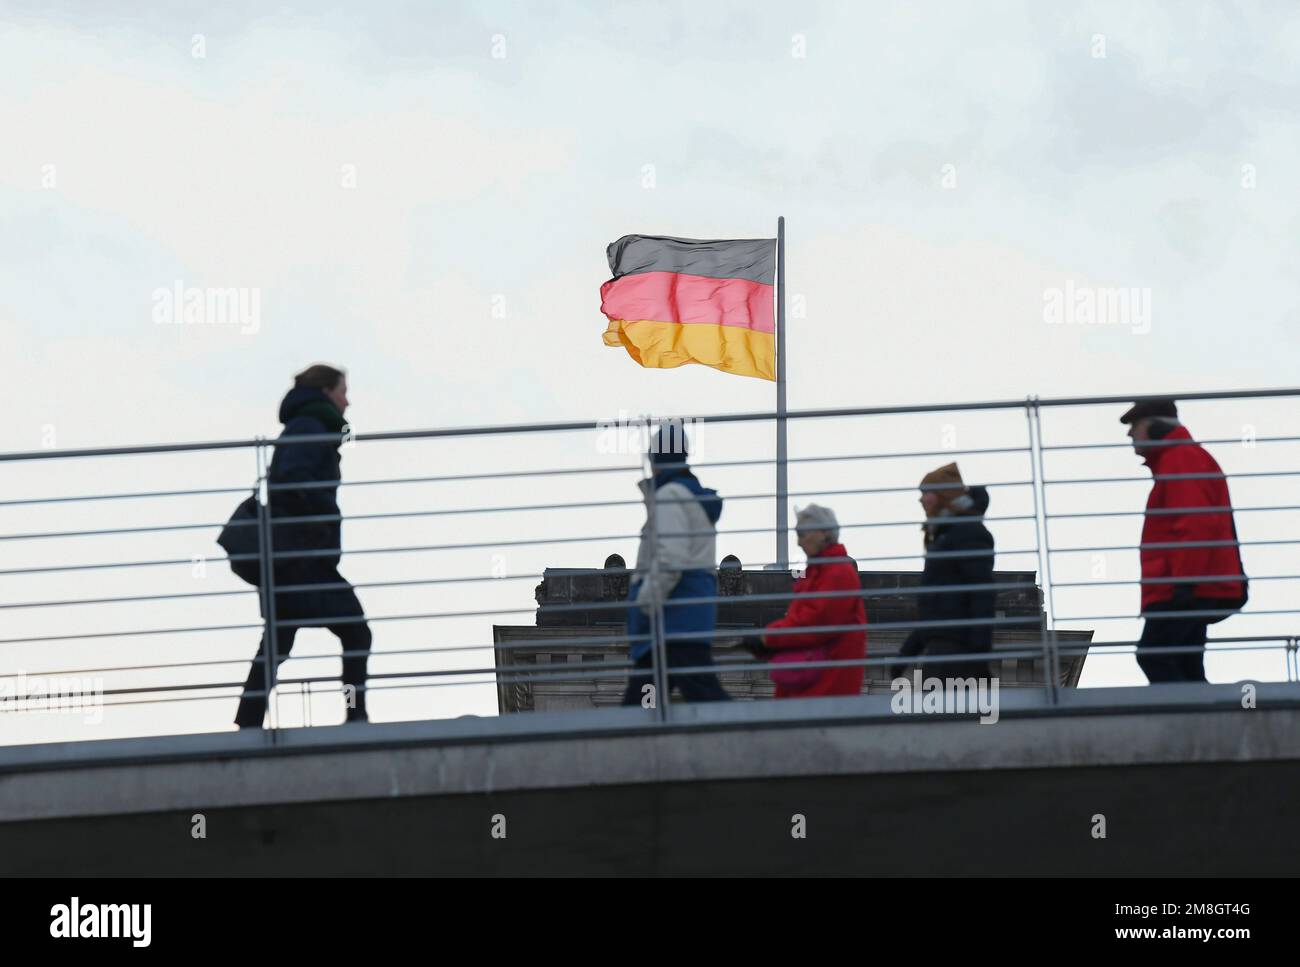 Berlino, Germania. 13th Jan, 2023. La gente cammina su un ponte a Berlino, Germania, 13 gennaio 2023. Secondo i dati preliminari pubblicati venerdì dall'Ufficio federale di statistica (Destatis), il prodotto interno lordo (PIL) rettificato per i prezzi della Germania nel 2022 è stato superiore del 1,9% rispetto all'anno precedente. Credit: Ren Pengfei/Xinhua/Alamy Live News Foto Stock